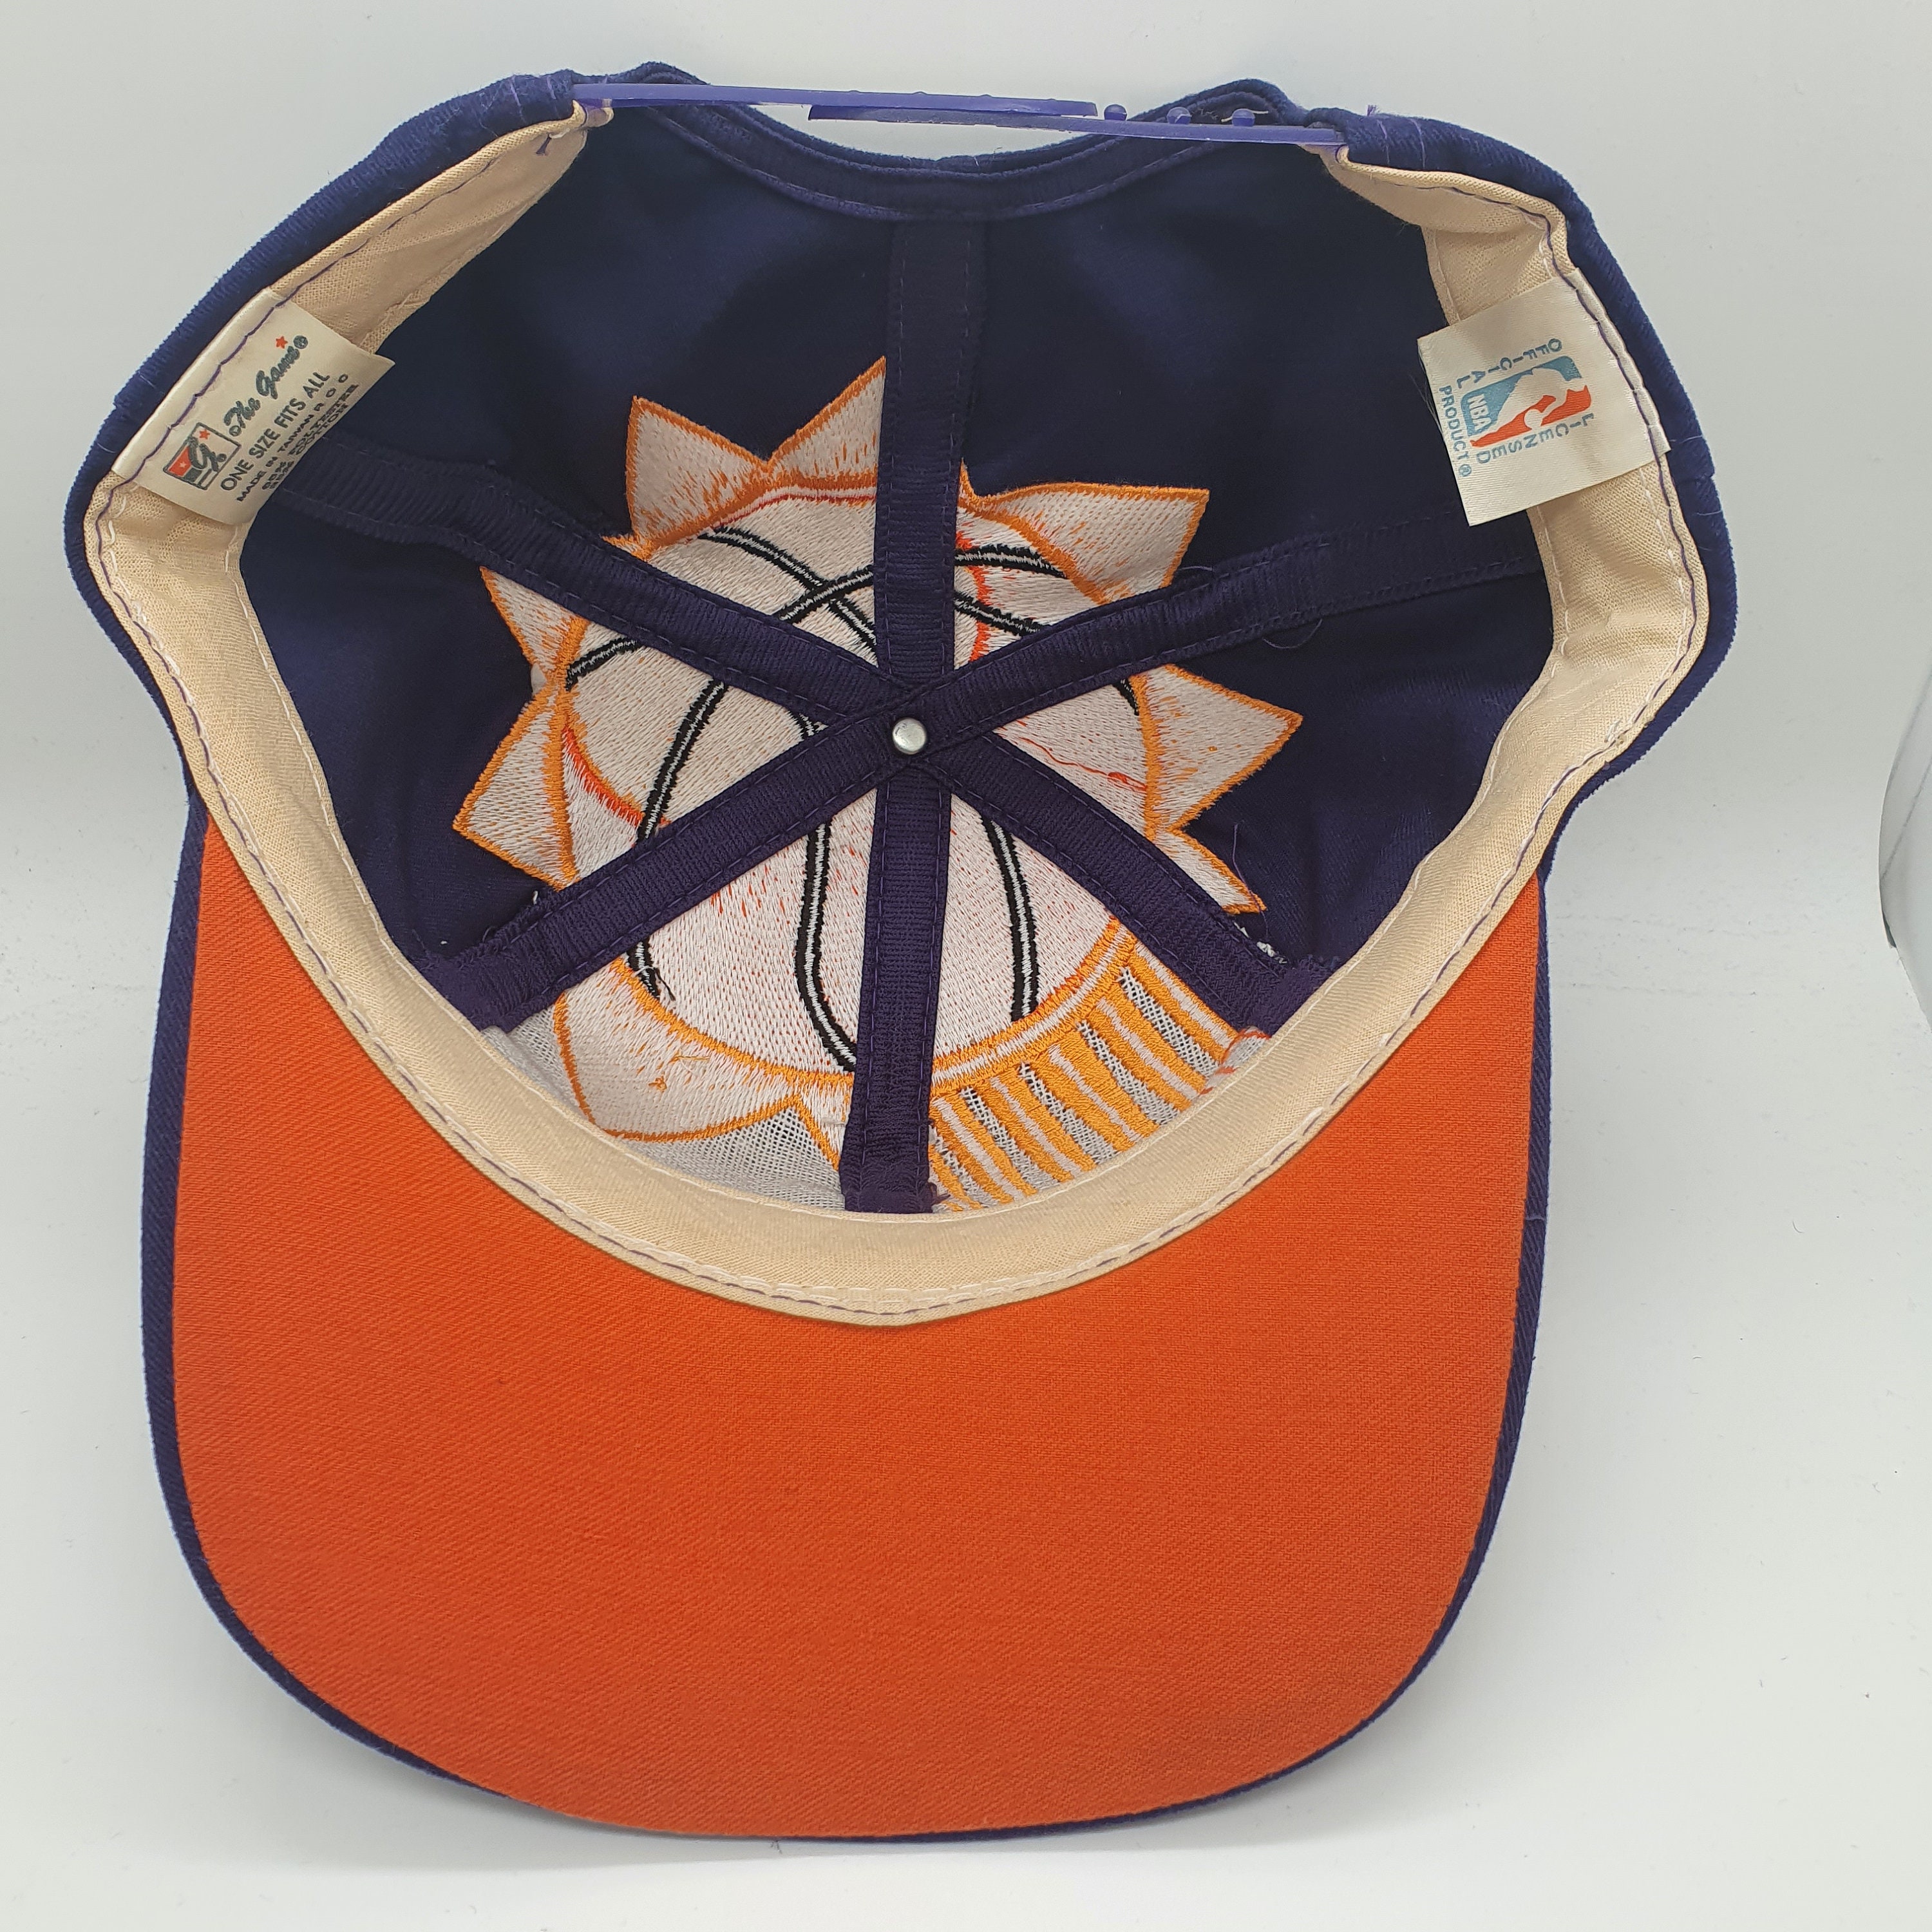 Accessories Hats & Caps Baseball & Trucker Caps The Game Big Logo Phoenix Suns vintage Snapback Hat Cap 90s NBA 